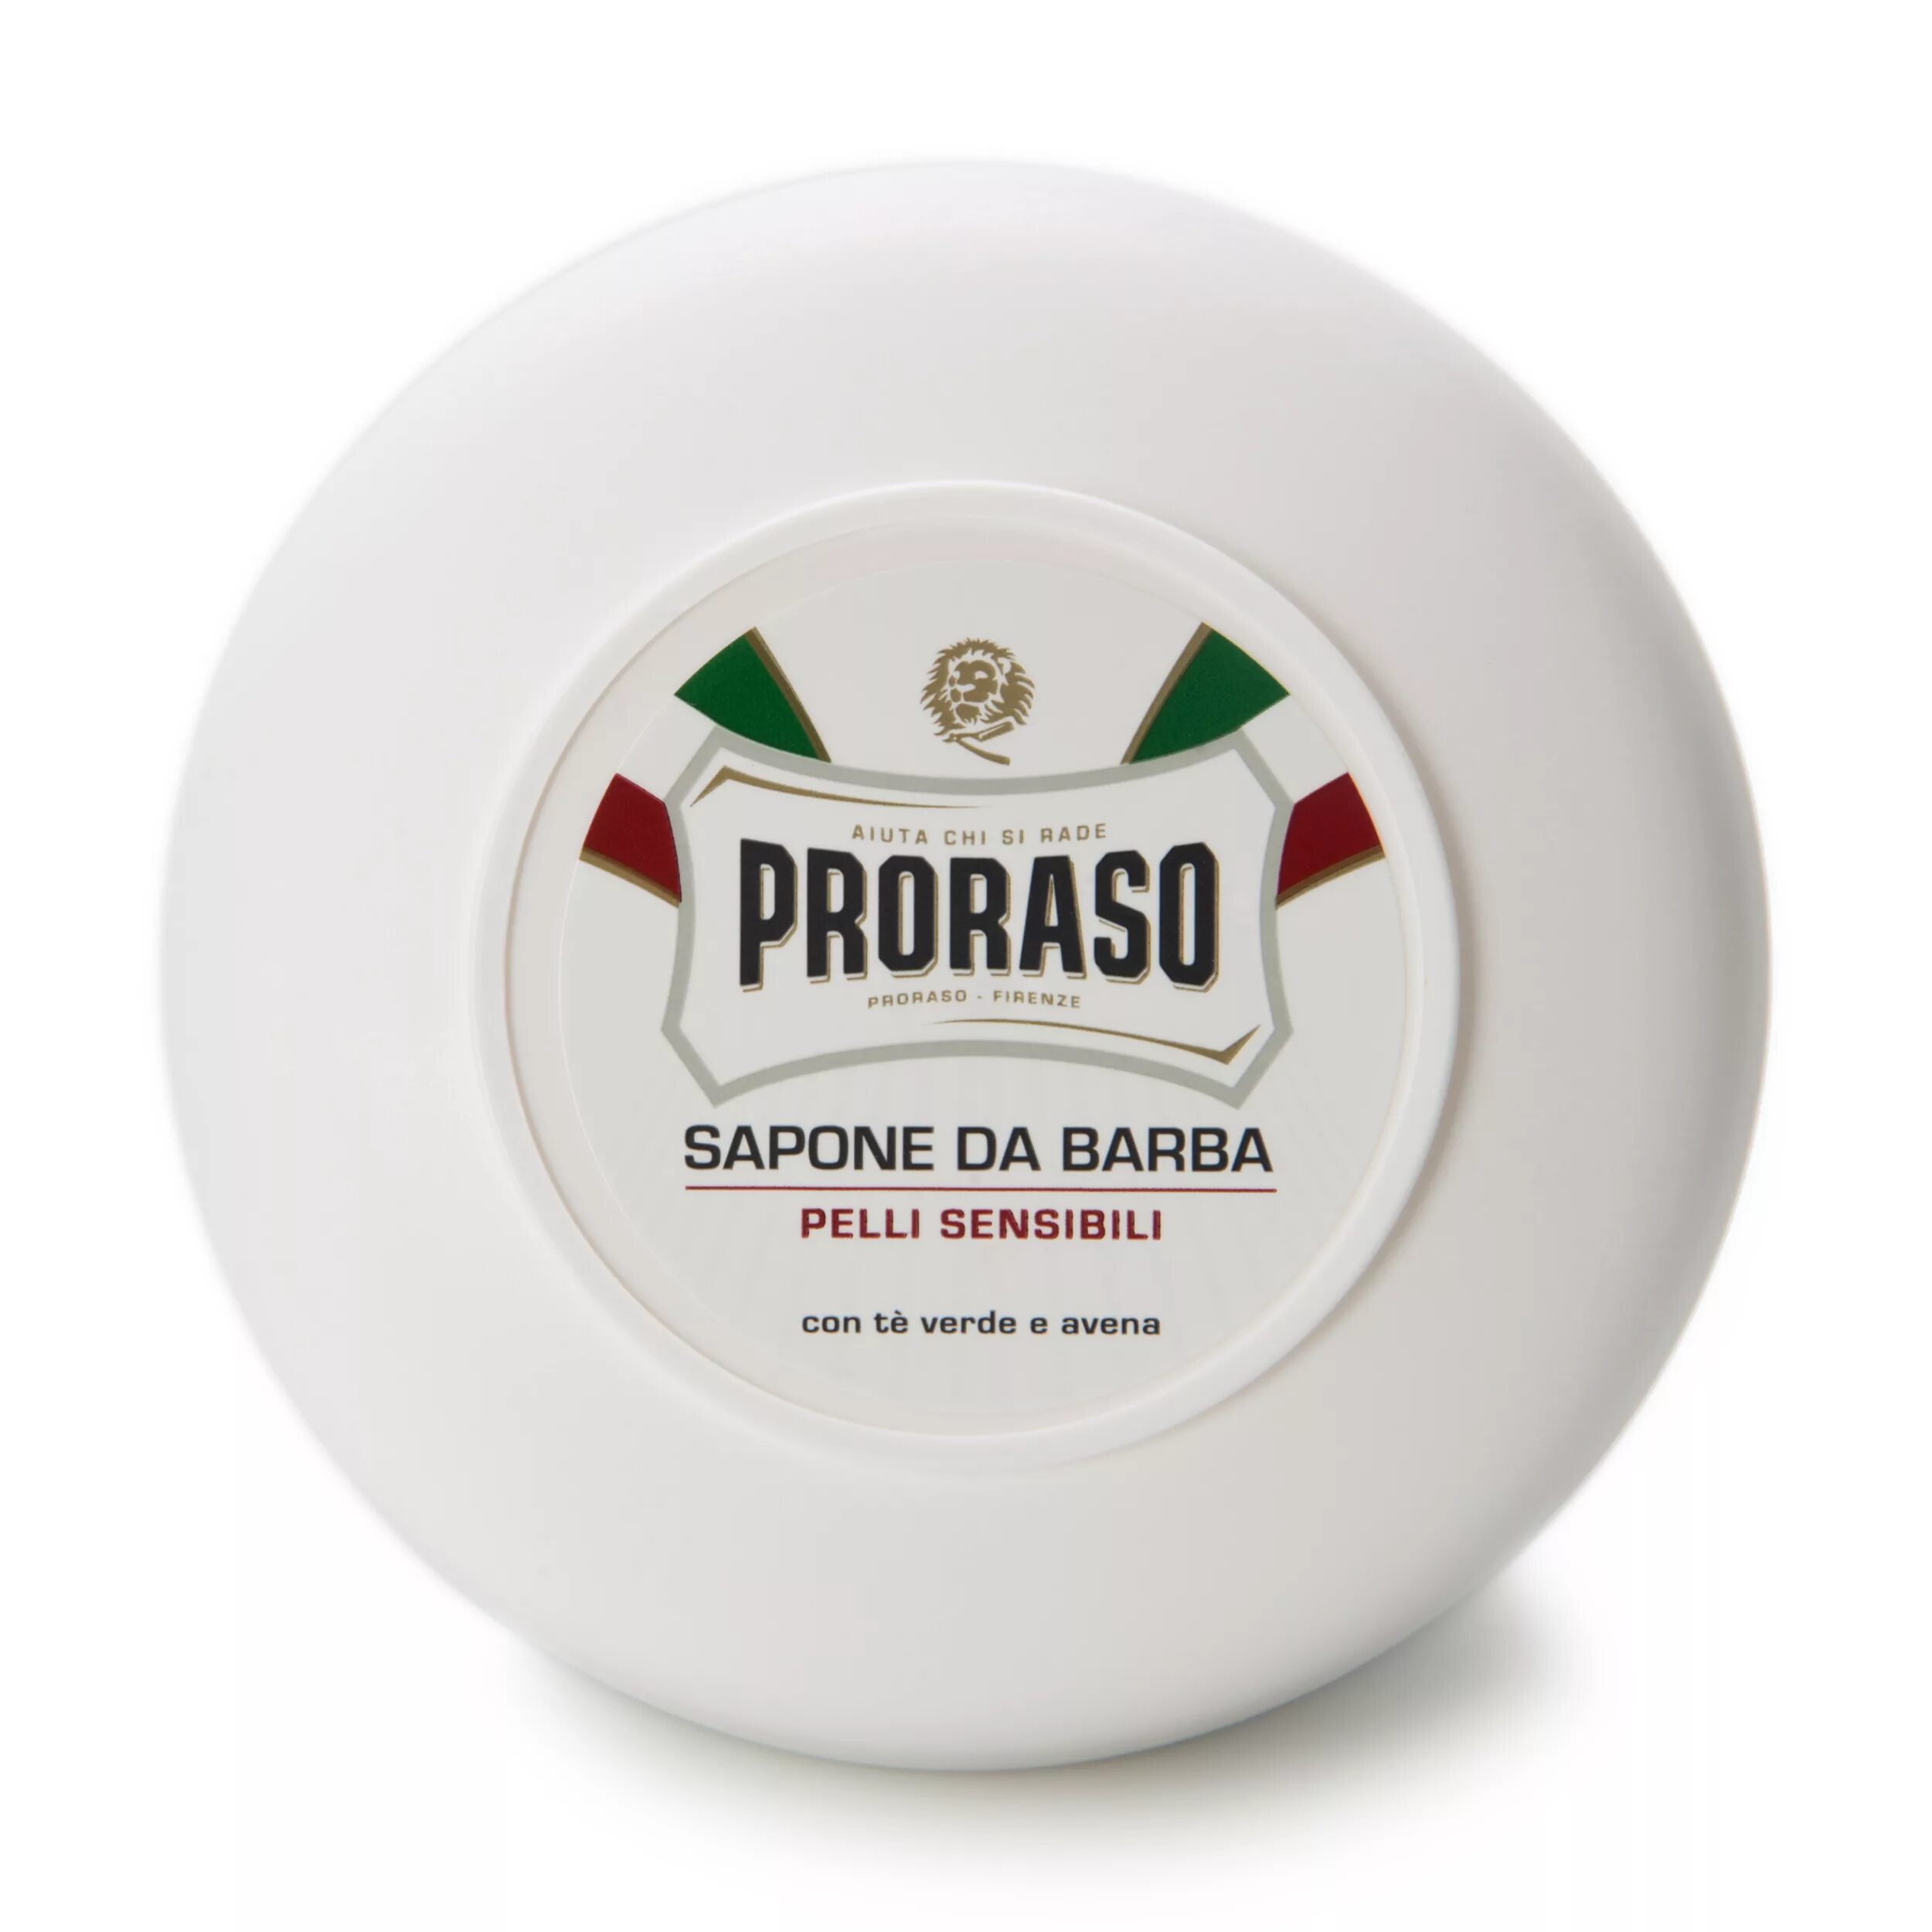 Мыло для бритья отзывы. Proraso - мыло для чувствительной кожи, 150 мл. Прорасо мыло для бритья. Мыло для бритья Proraso. Proraso - мыло для бритья освежающее, 150 мл.